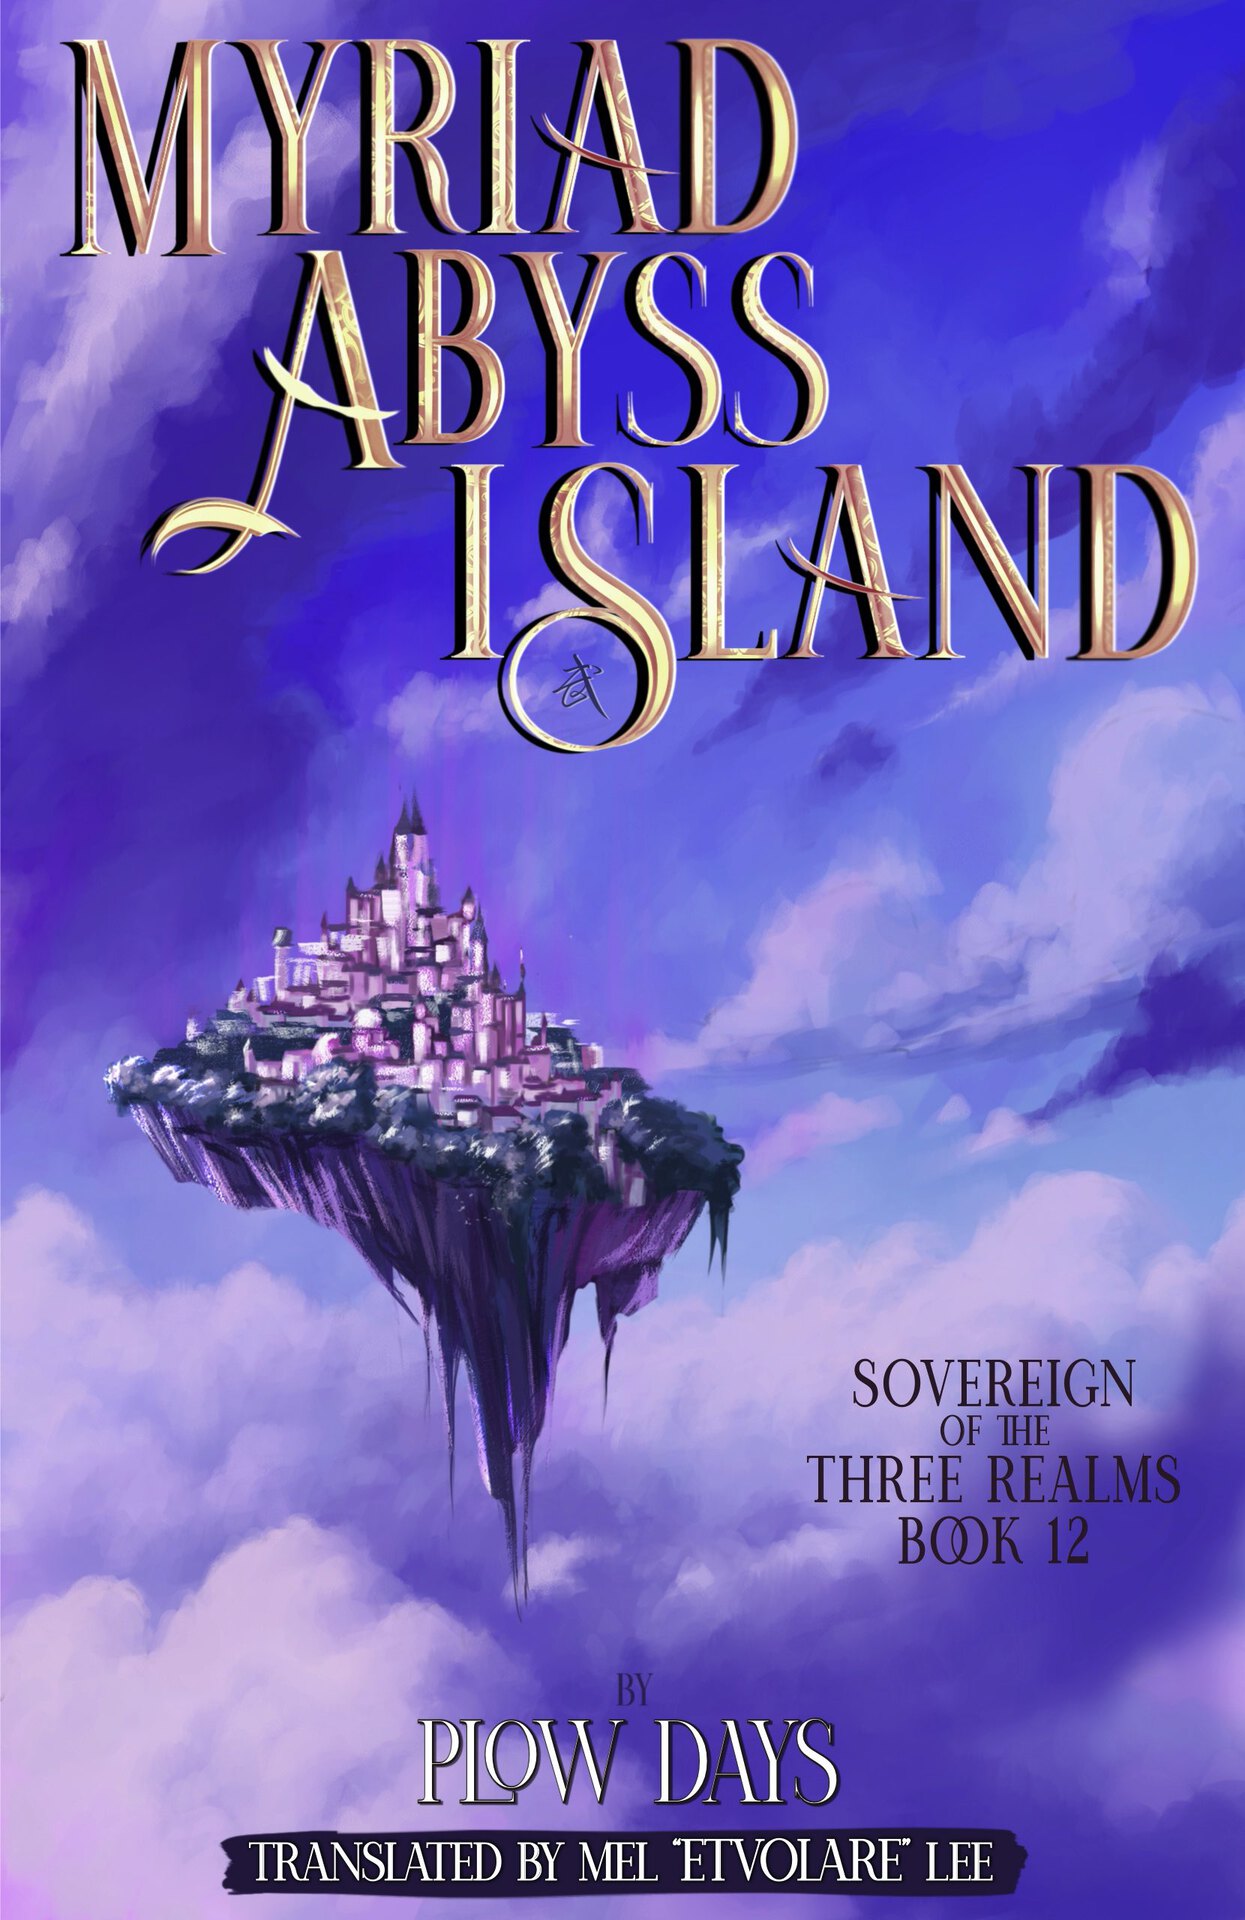 Myriad Abyss Island